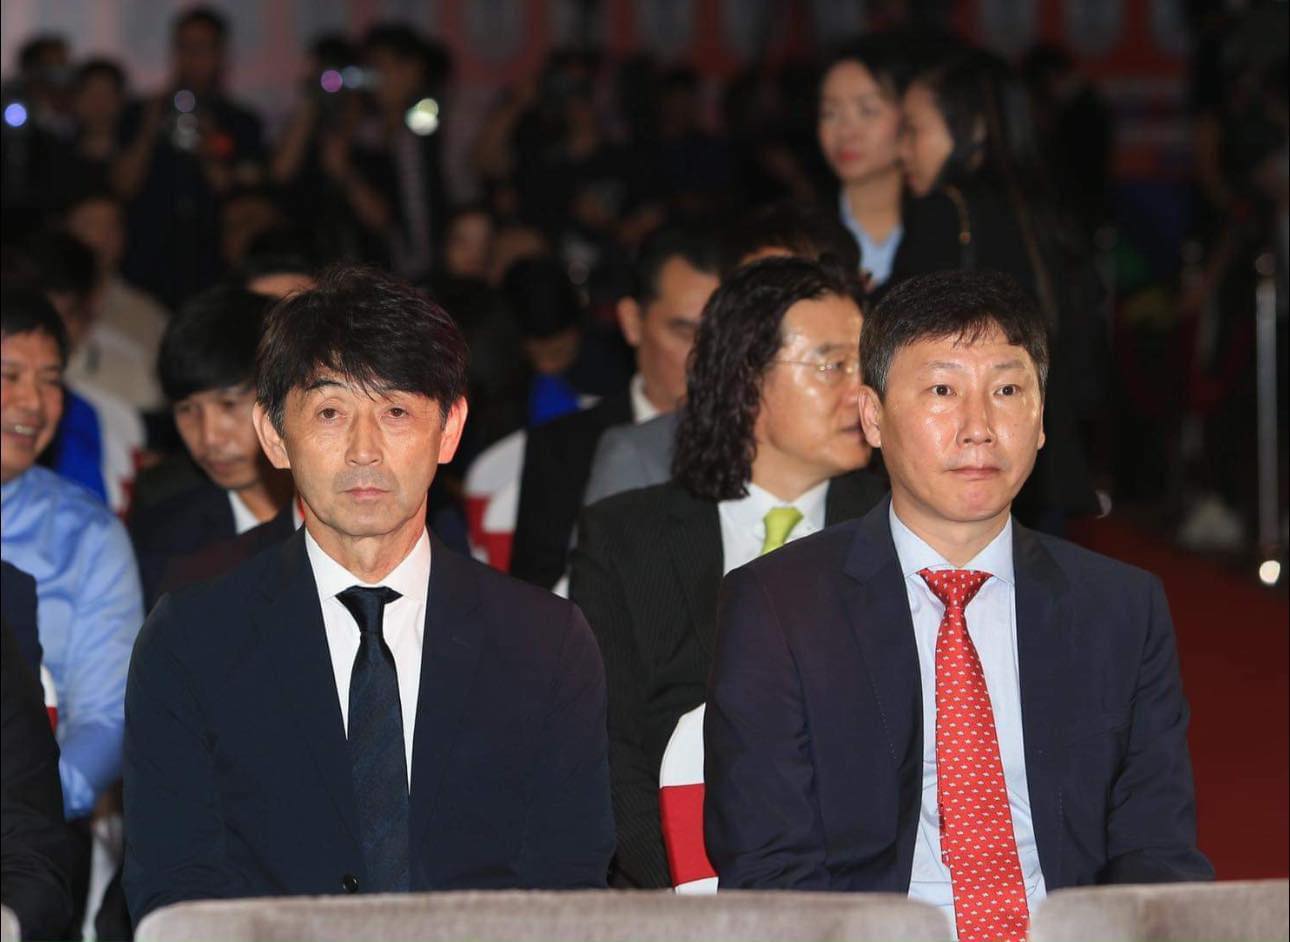 Huấn luyện viên tuyển Việt Nam - Kim Sang-sik và huấn luyện viên tuyển Thái Lan - Masatada Ishii tham dự sự kiện. Ảnh: An Nguyên